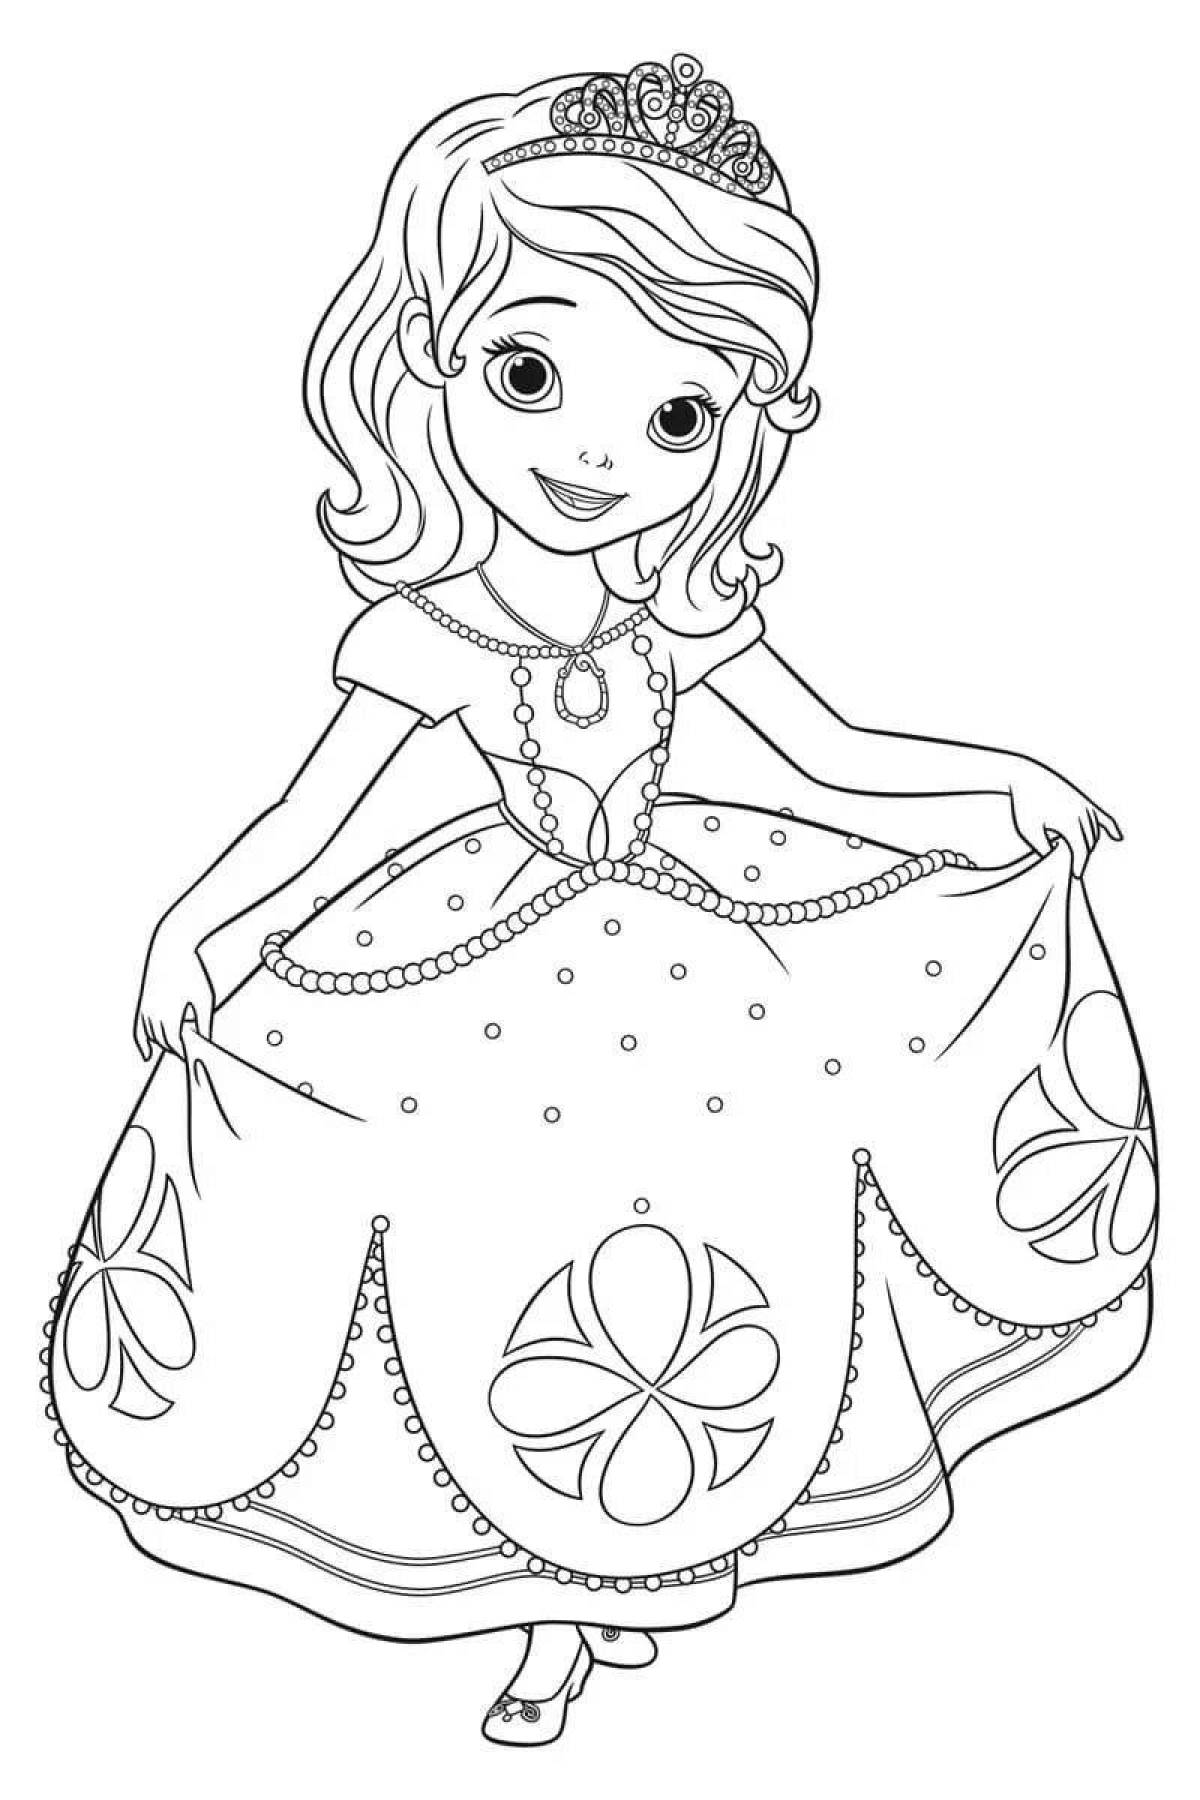 Веселая раскраска для девочек принцесс 5-6 лет